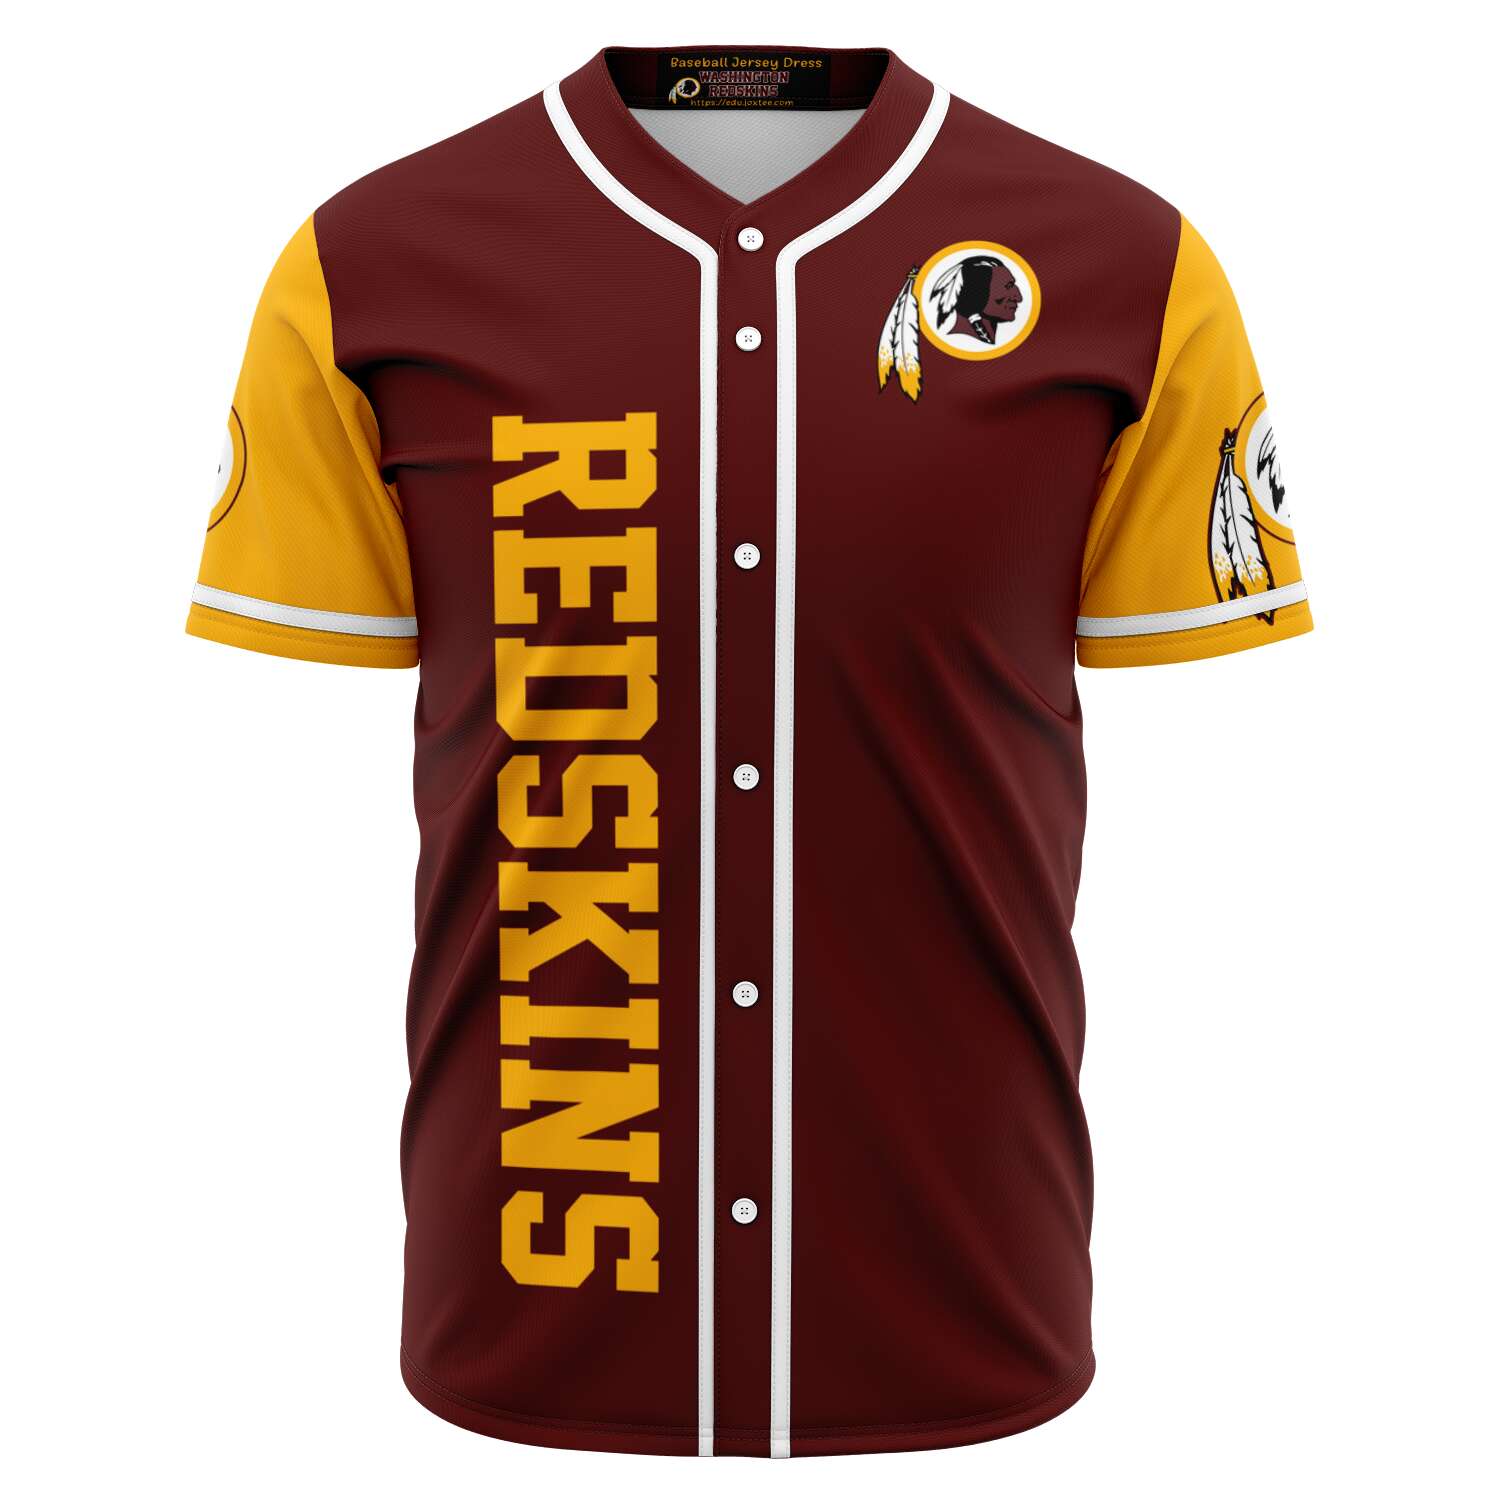 Wa Redskins Baseball Jersey v4248